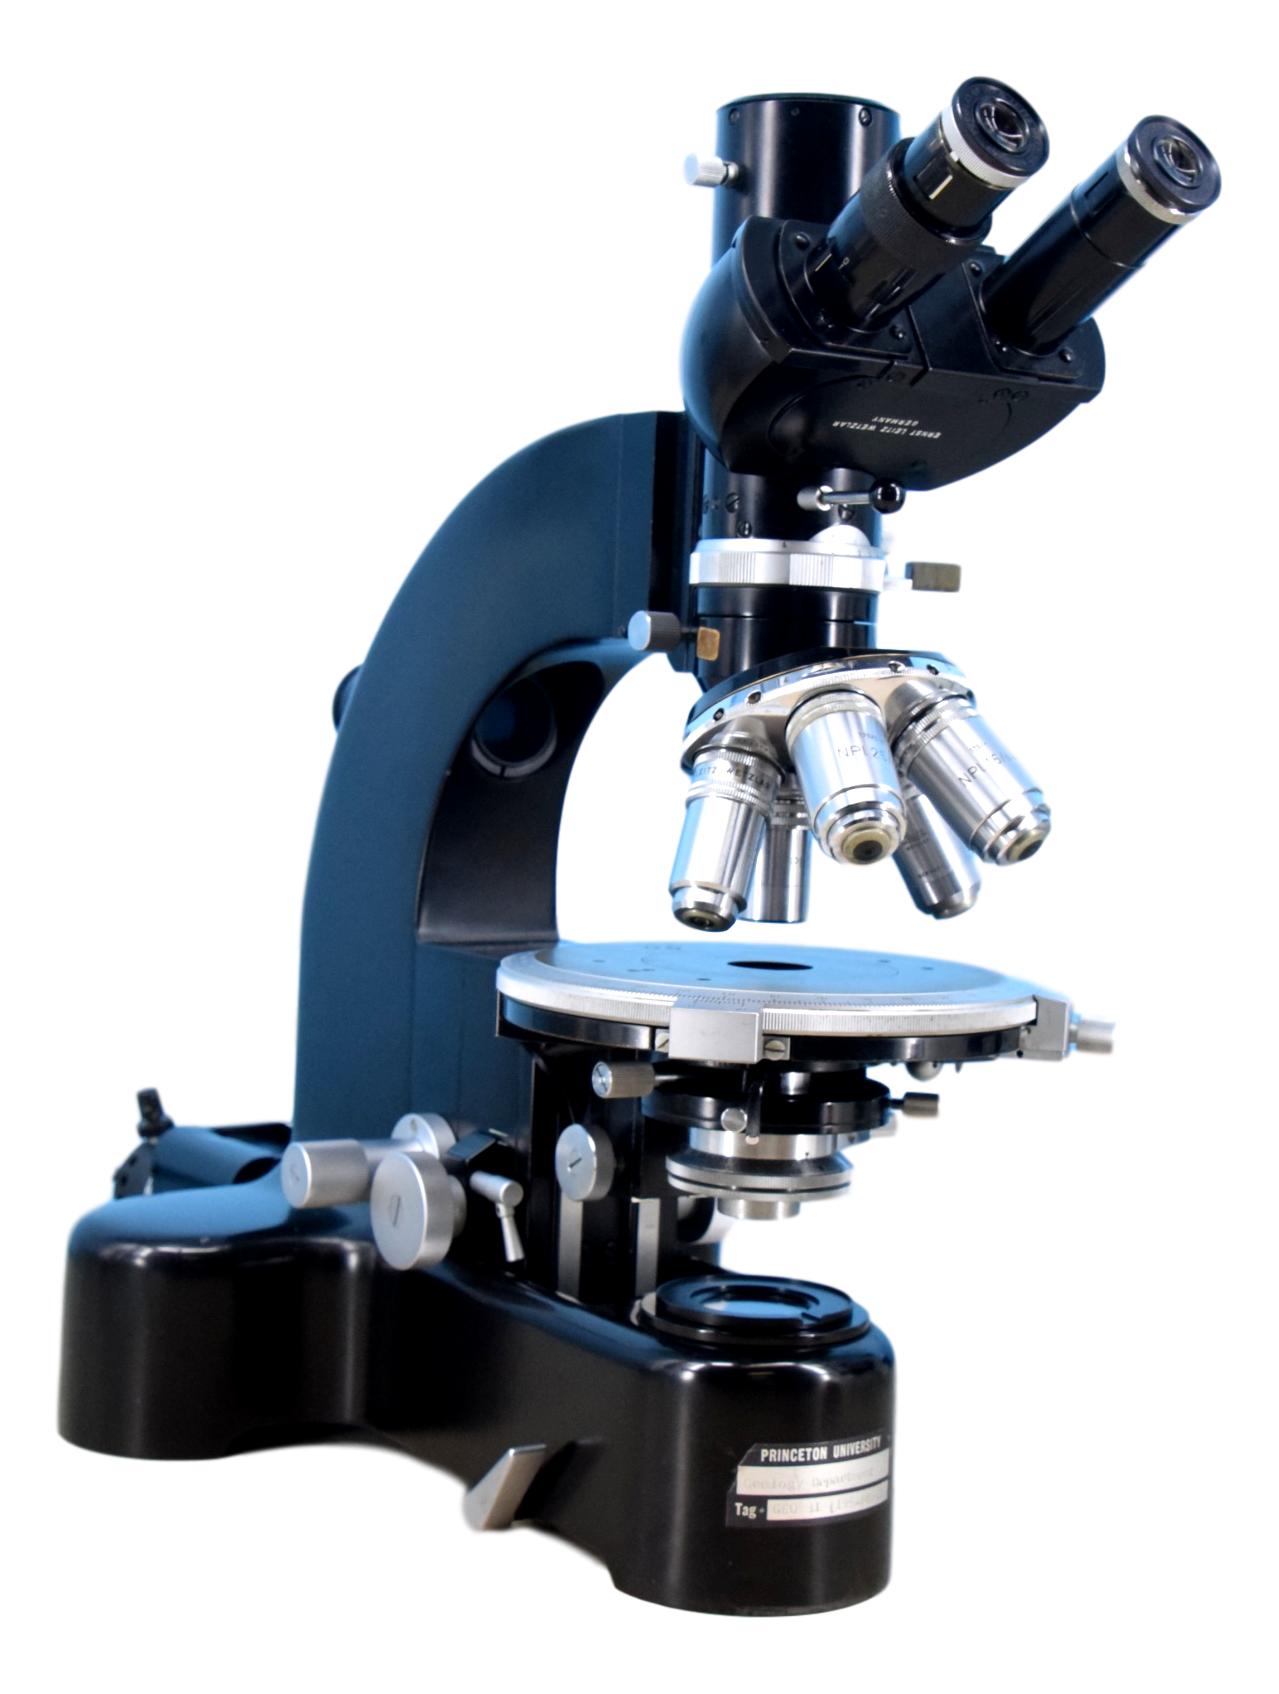 Leitz Ortholux POL Polarizing Light Microscope